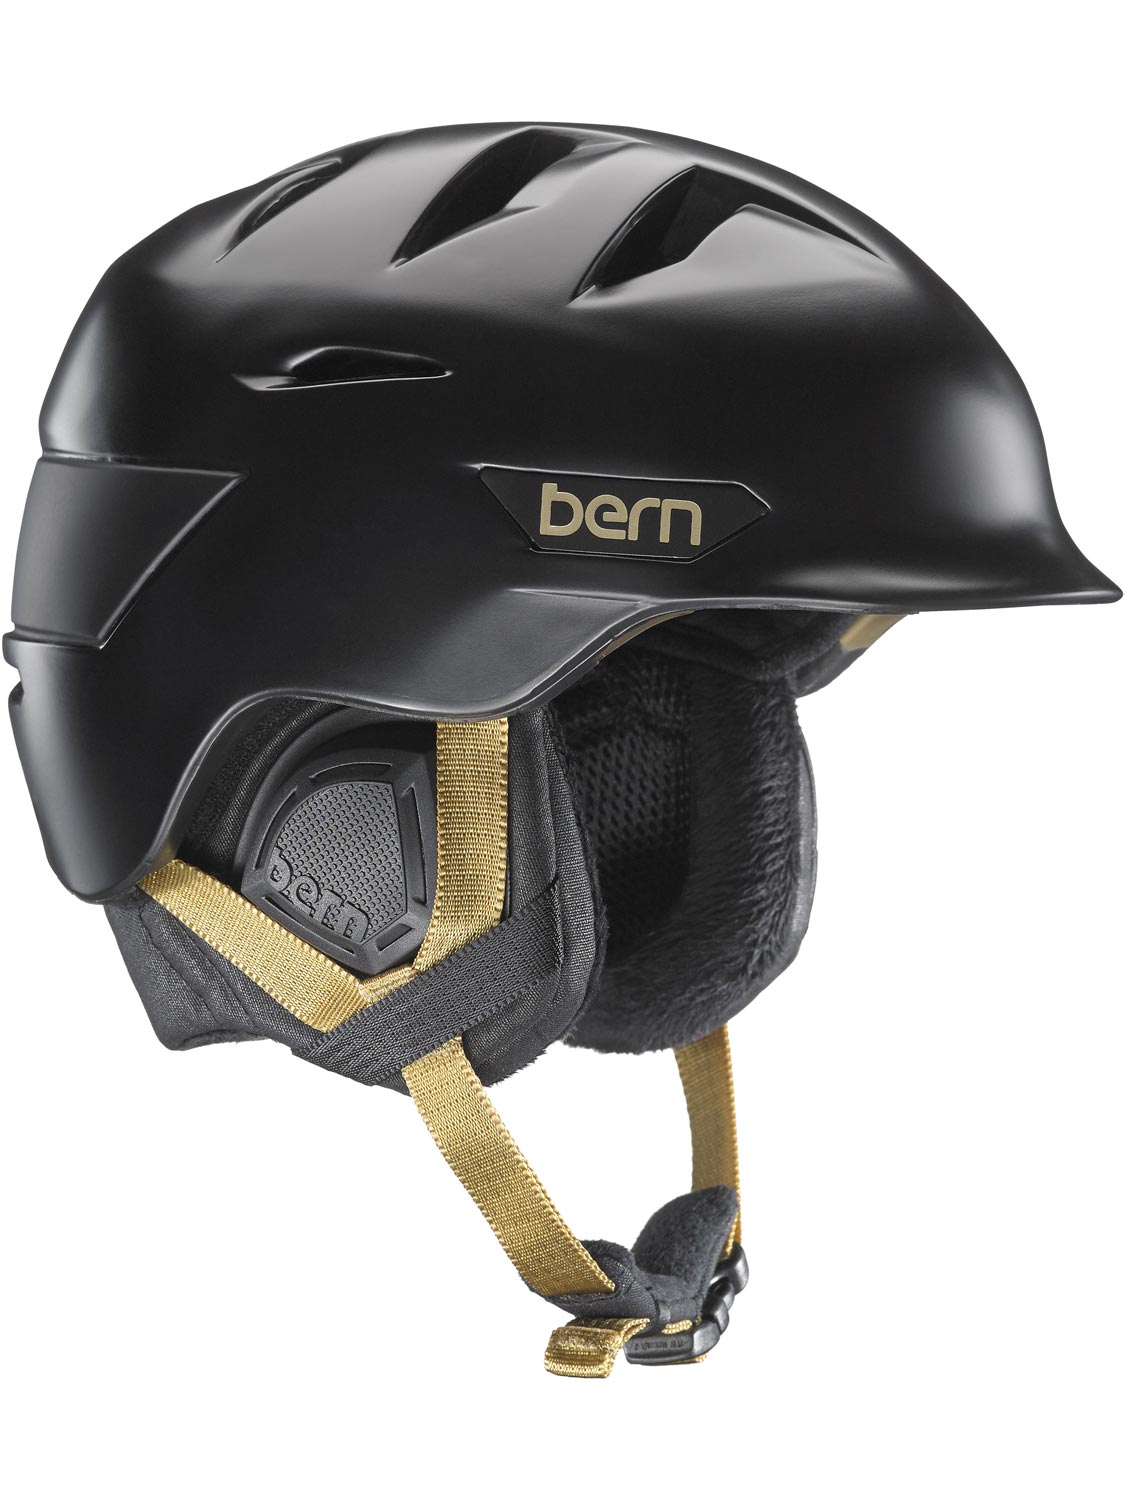 Hepburn Zipmold Helmet With BOA Winter Line